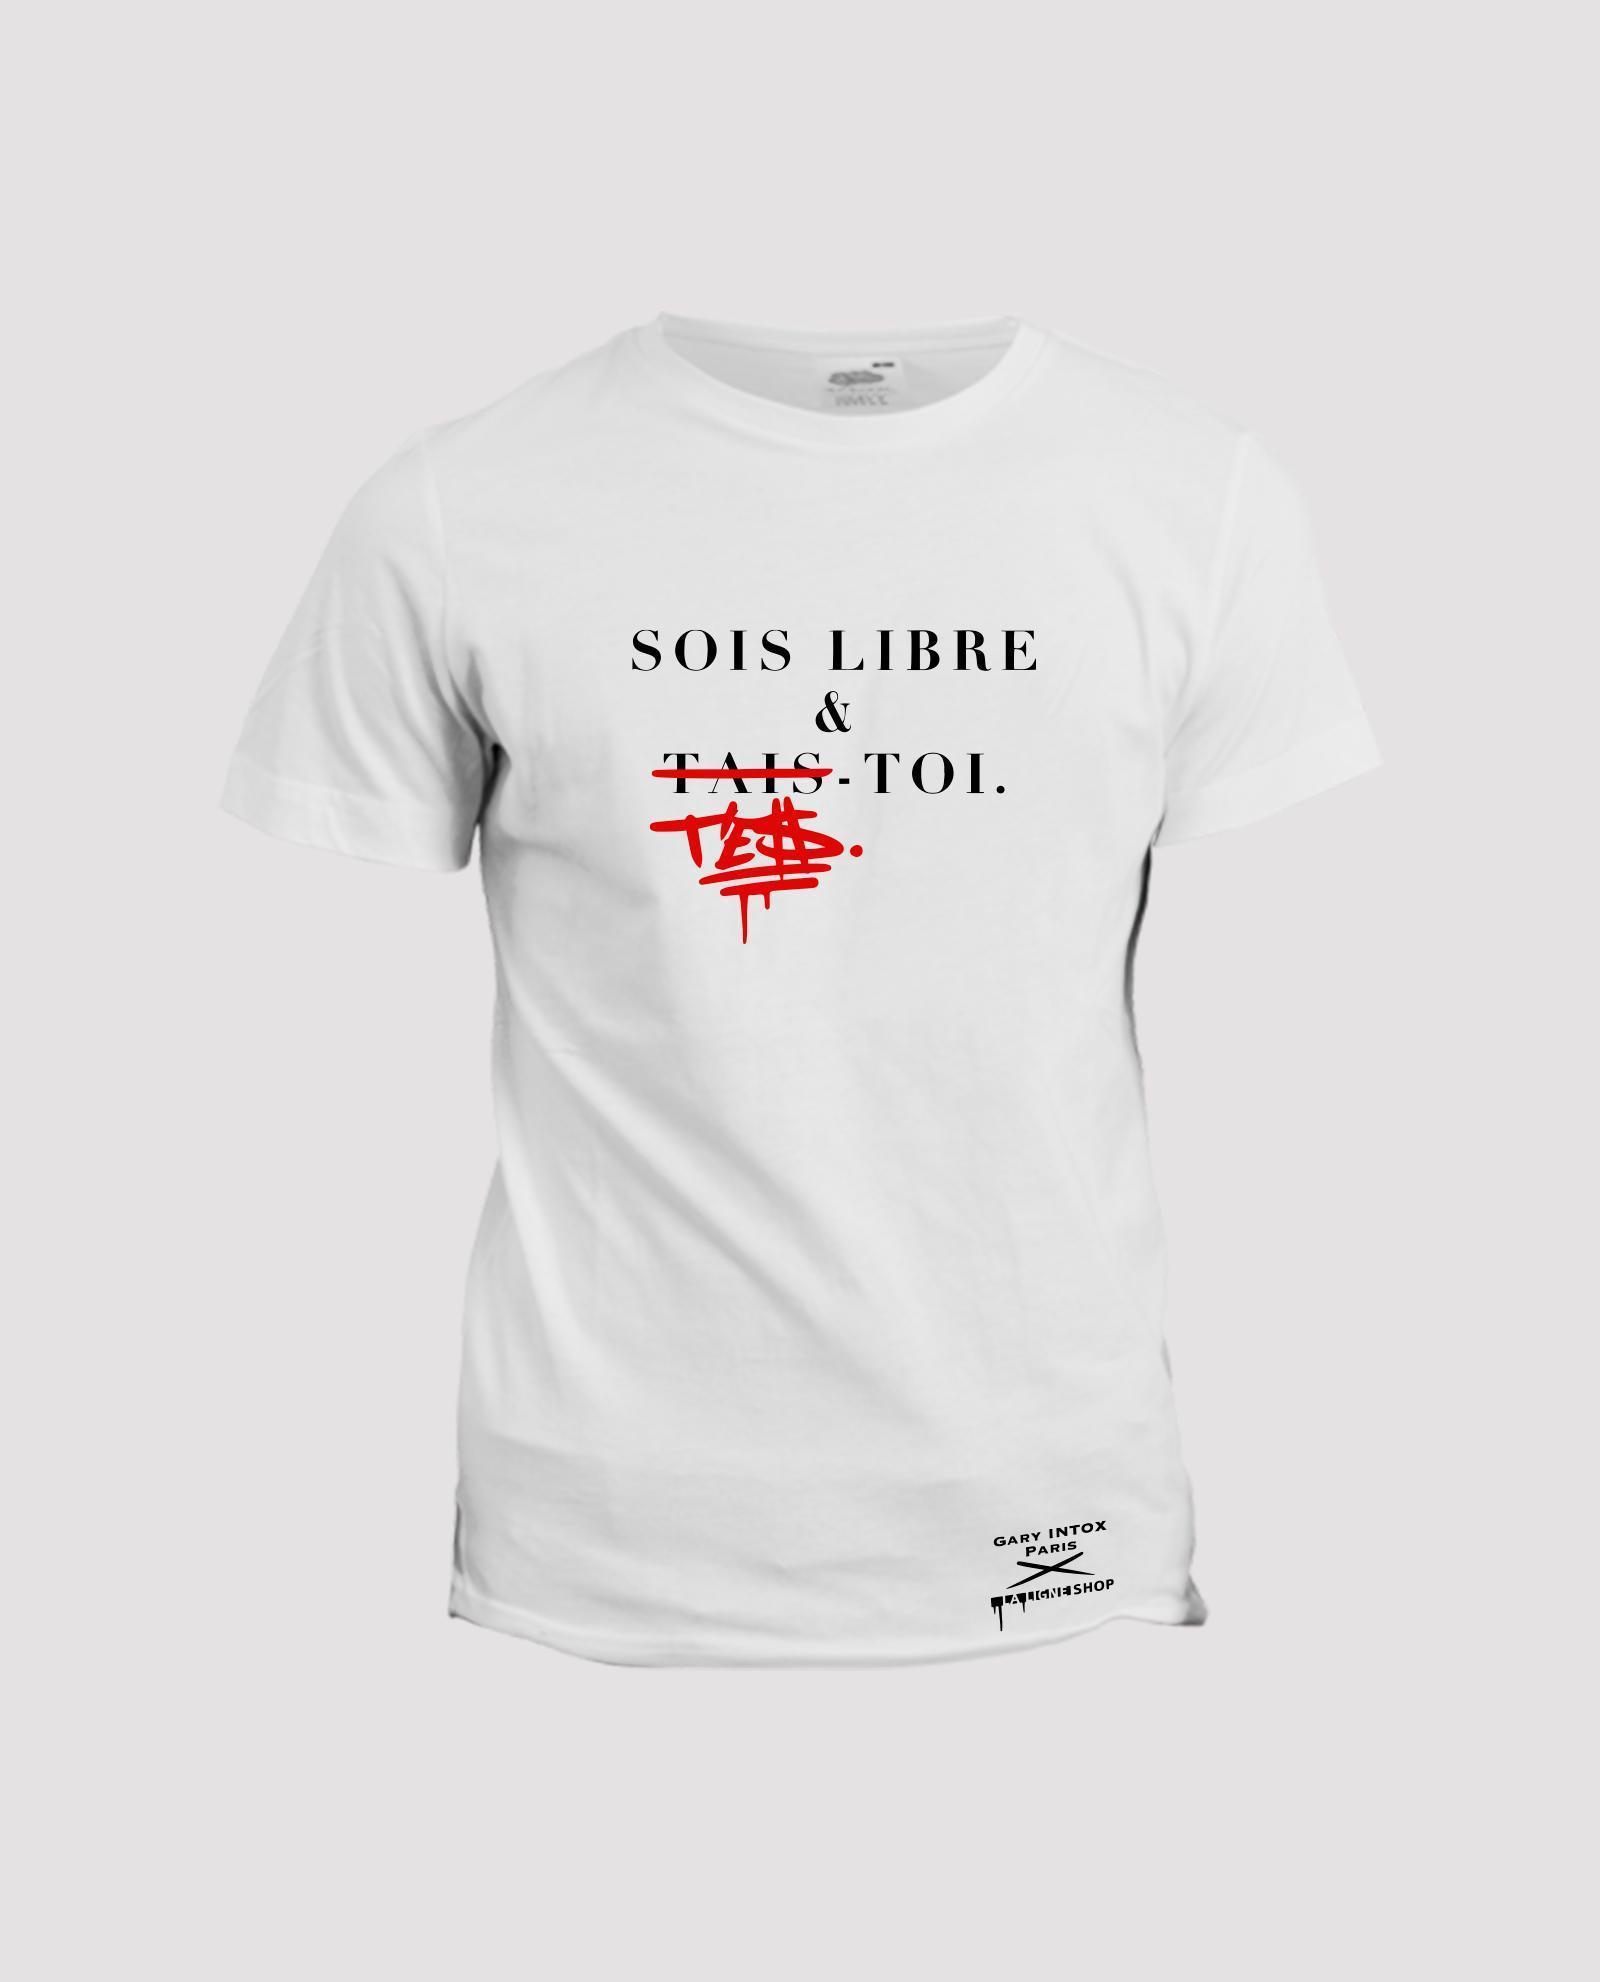 la-ligne-shop-collab-t-shirt-gary-intox-paris-sois-libre-et-tais-toi-t-es-toi-front-blanc